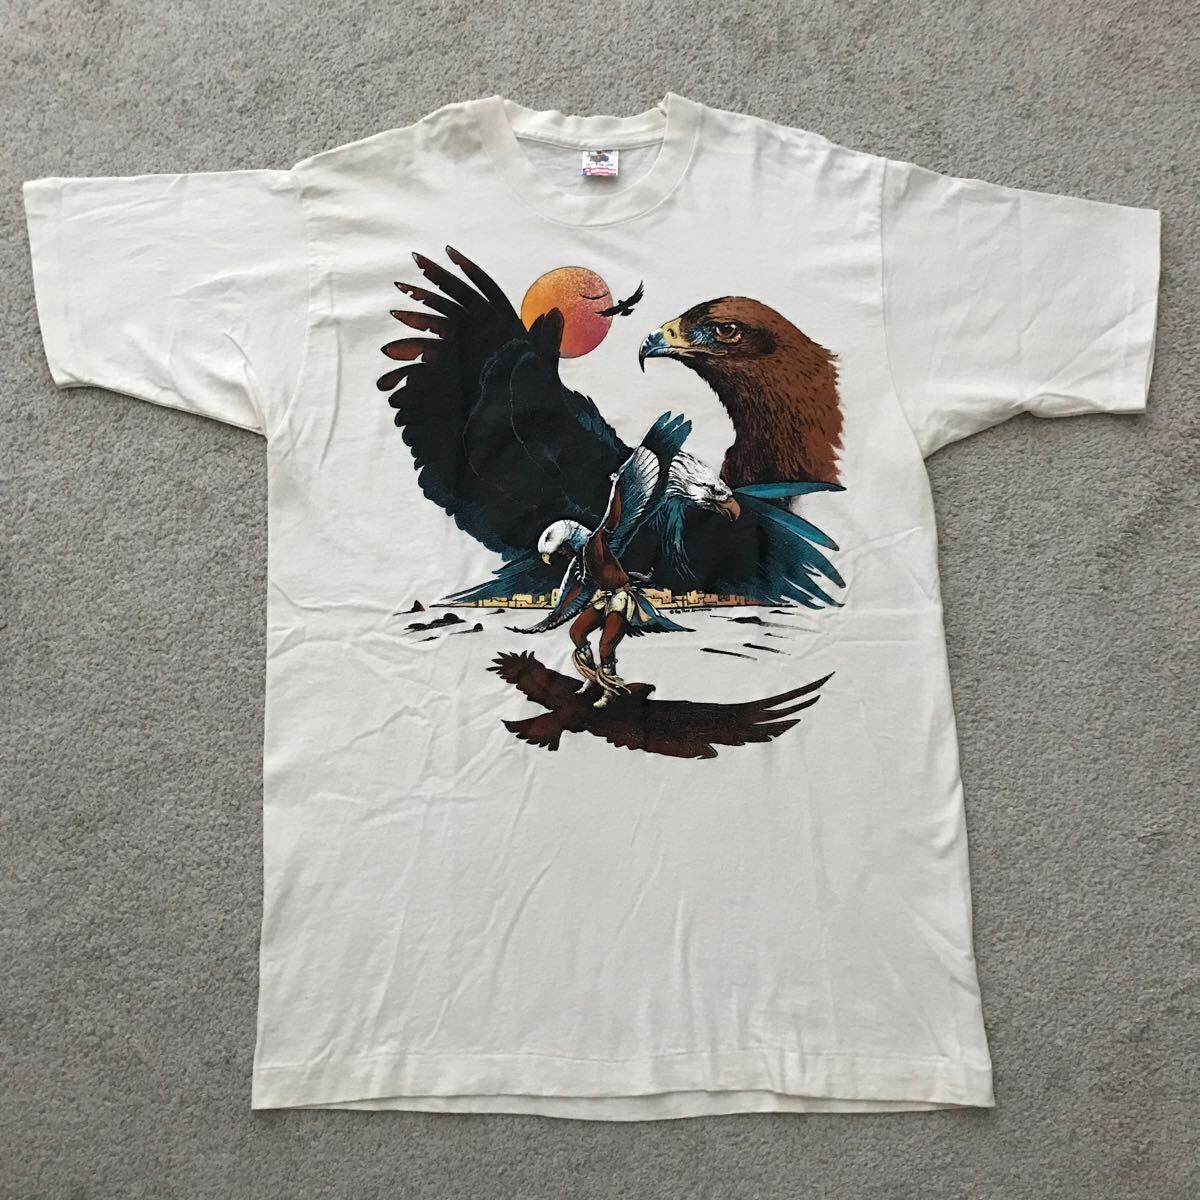 90's USA製 インディアン & イーグル 発泡プリント 半袖 Tシャツ フルーツオブザルーム ビンテージ アートT 白頭鷲 袖/裾シングル LARGEの画像1